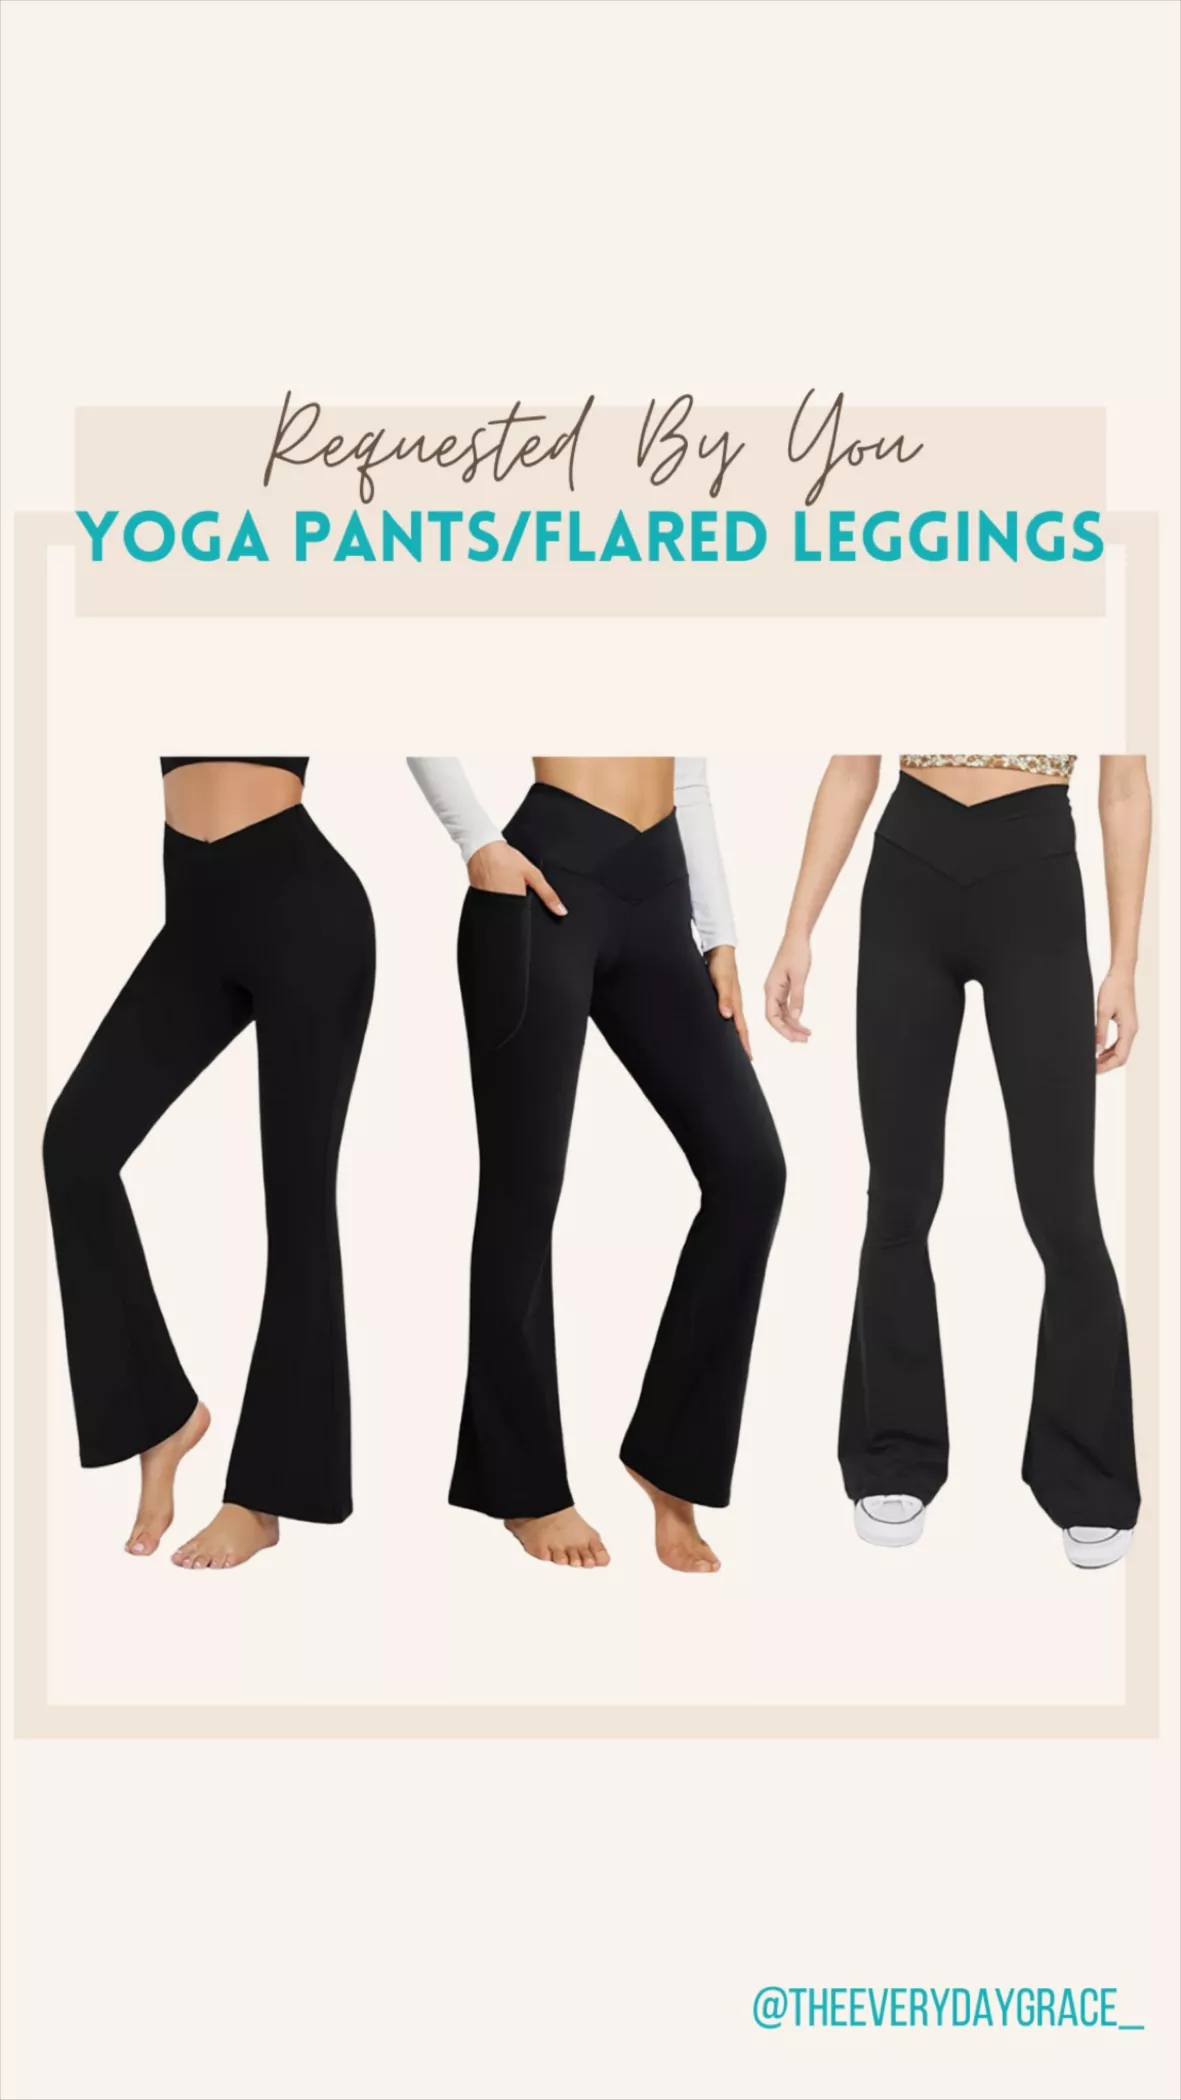 Shop Baleaf Yoga Dress Pants on Sale for $31 at